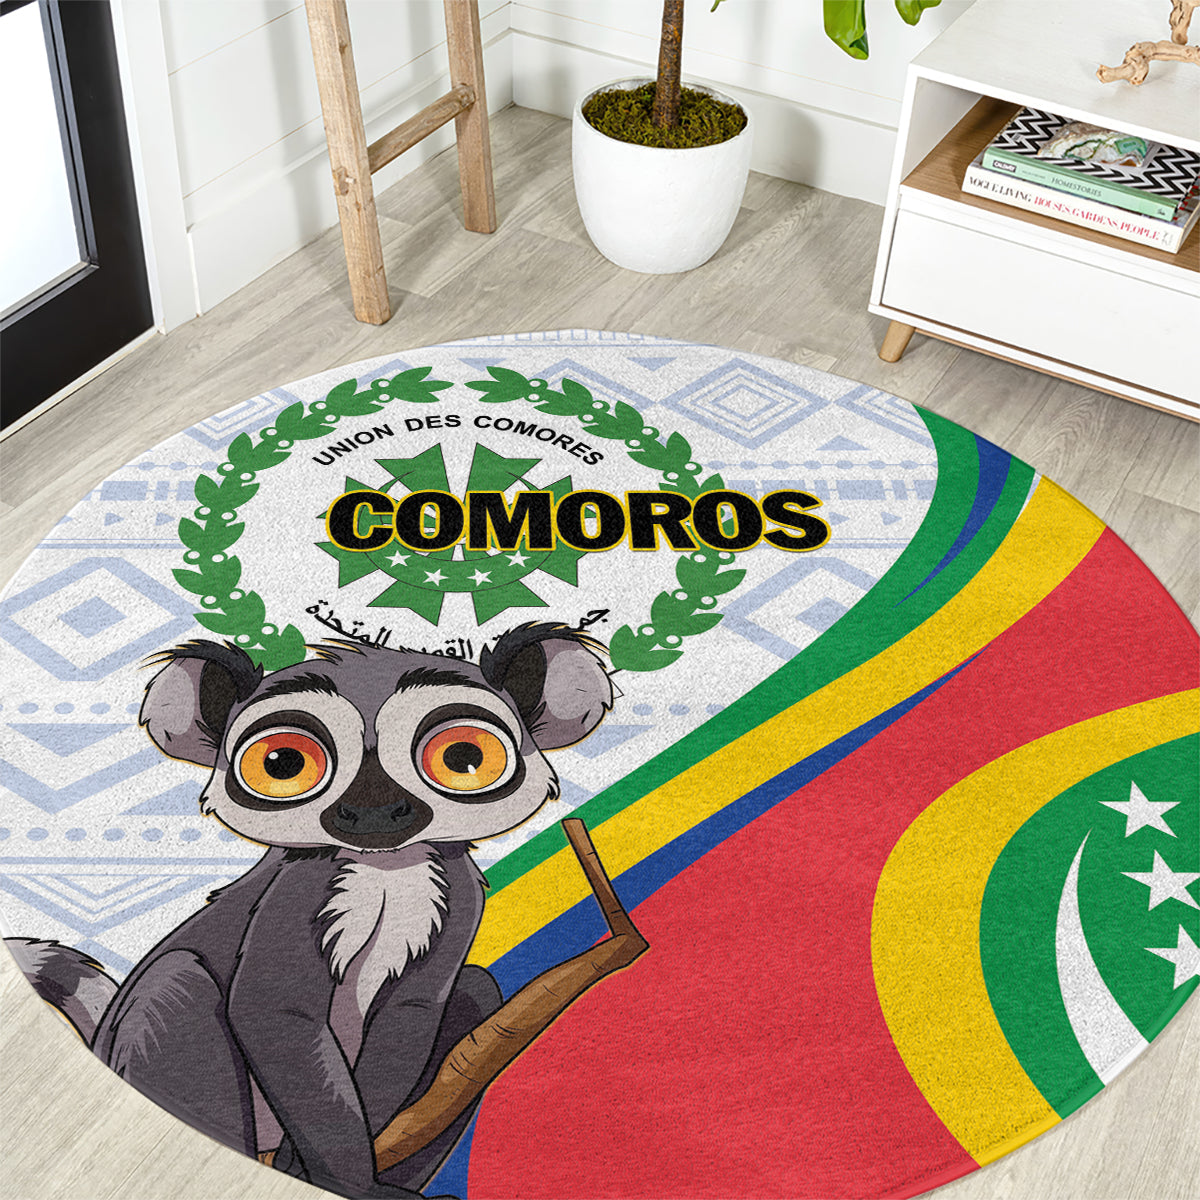 Comoros Independence Day Round Carpet 1975 Komori Mongoose Lemur African Pattern